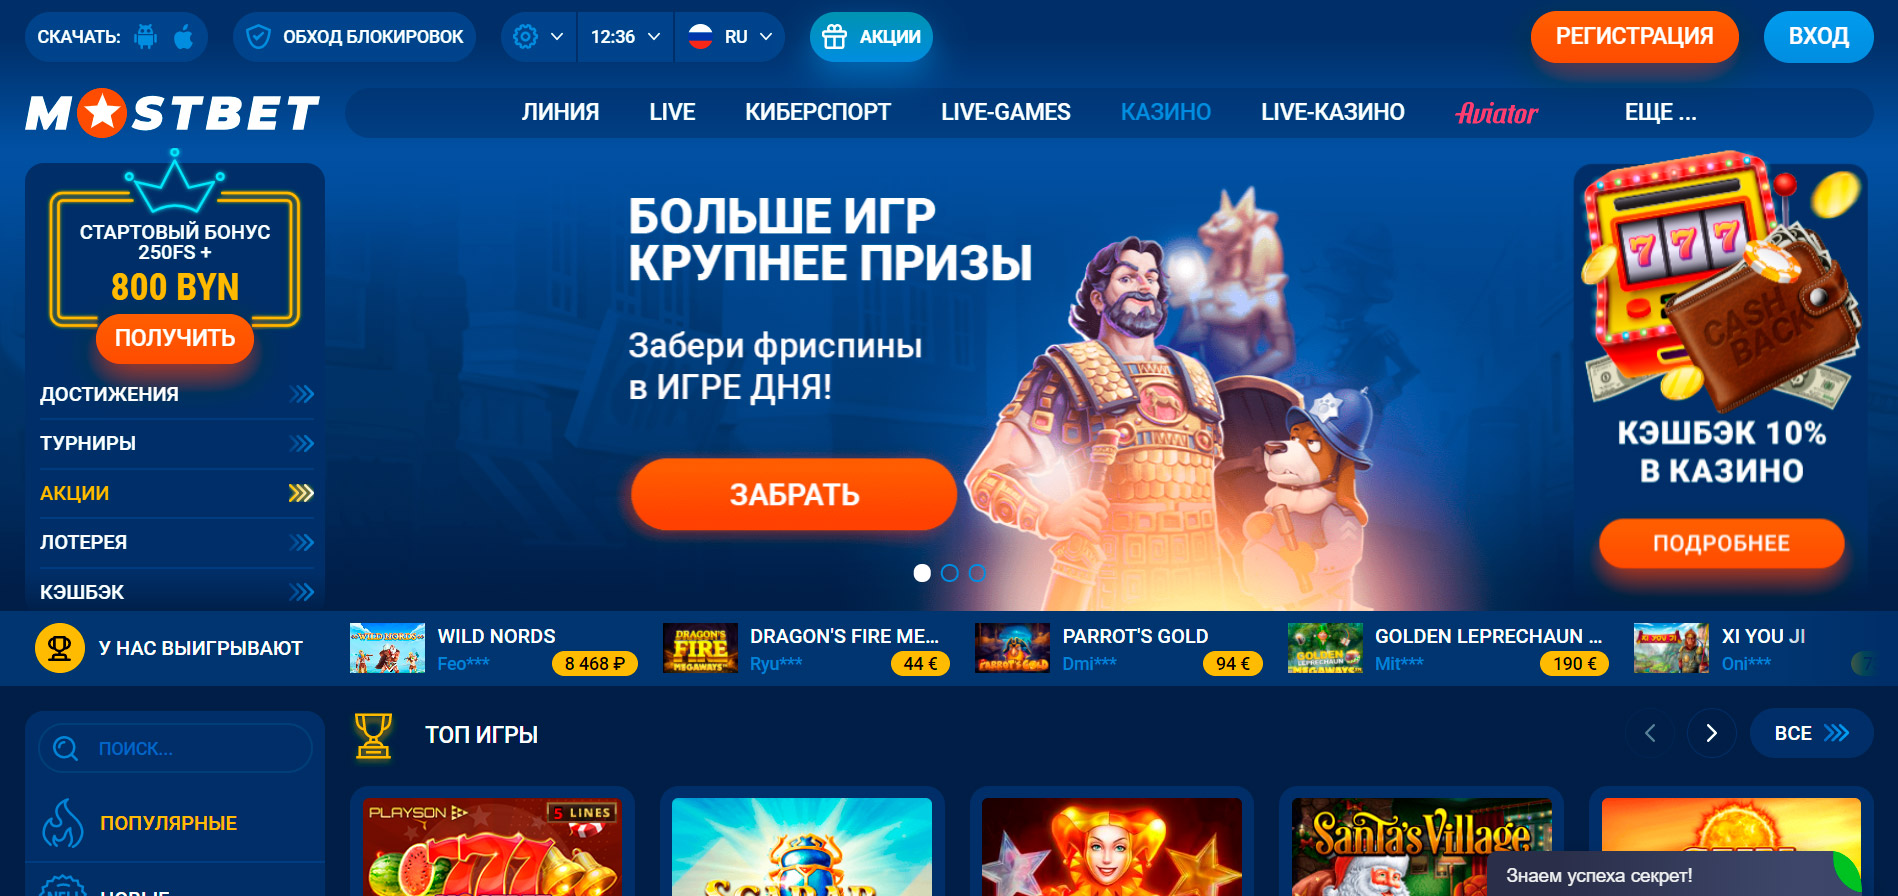 mostbet online casino